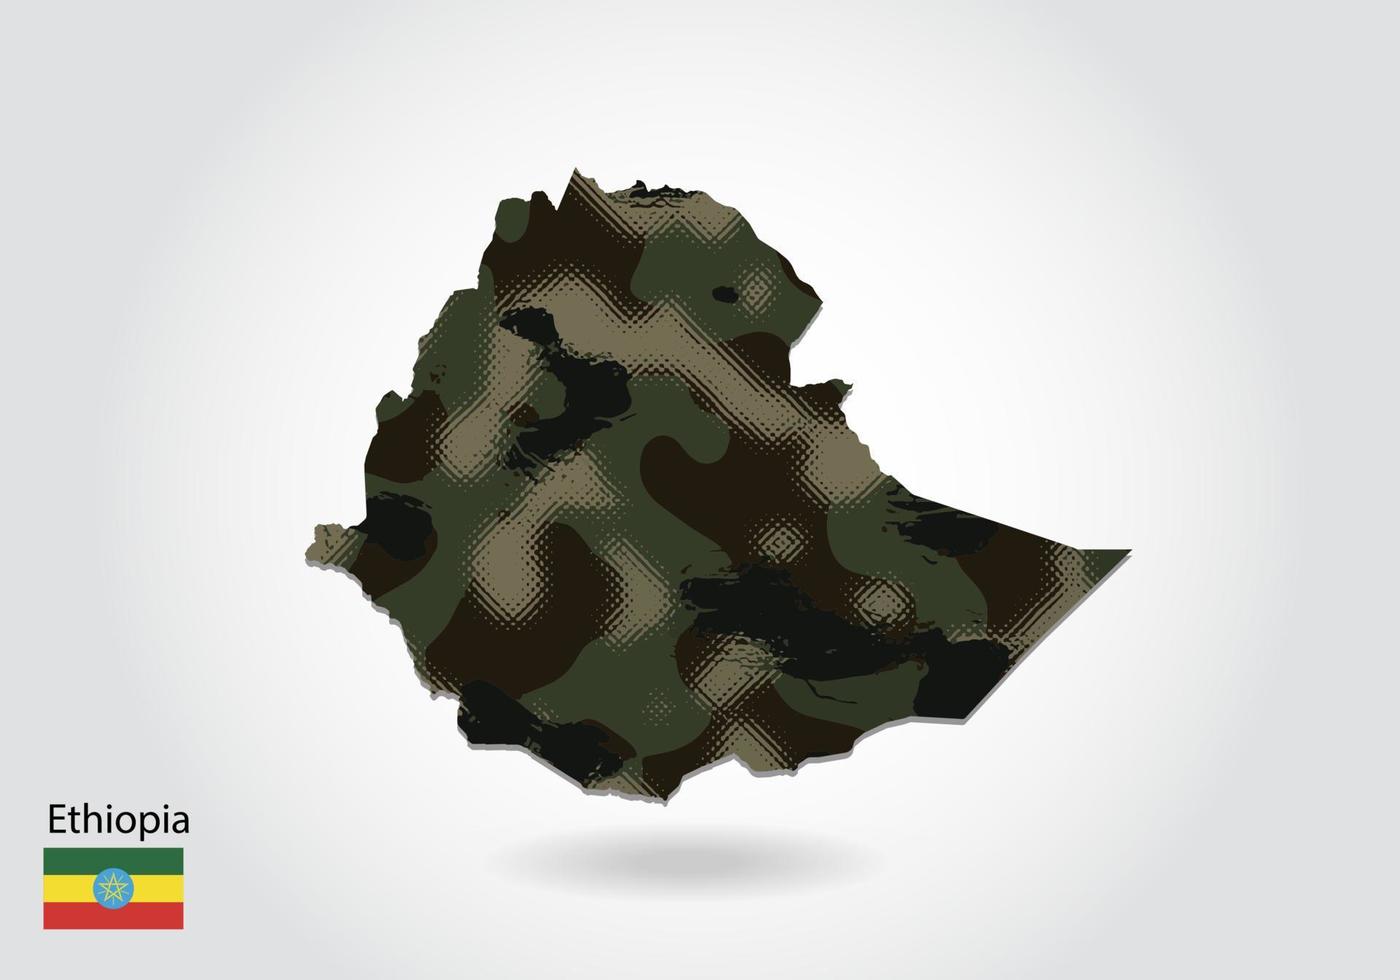 mapa de etiopía con patrón de camuflaje, bosque - textura verde en el mapa. concepto militar para ejército, soldado y guerra. escudo de armas, bandera. vector